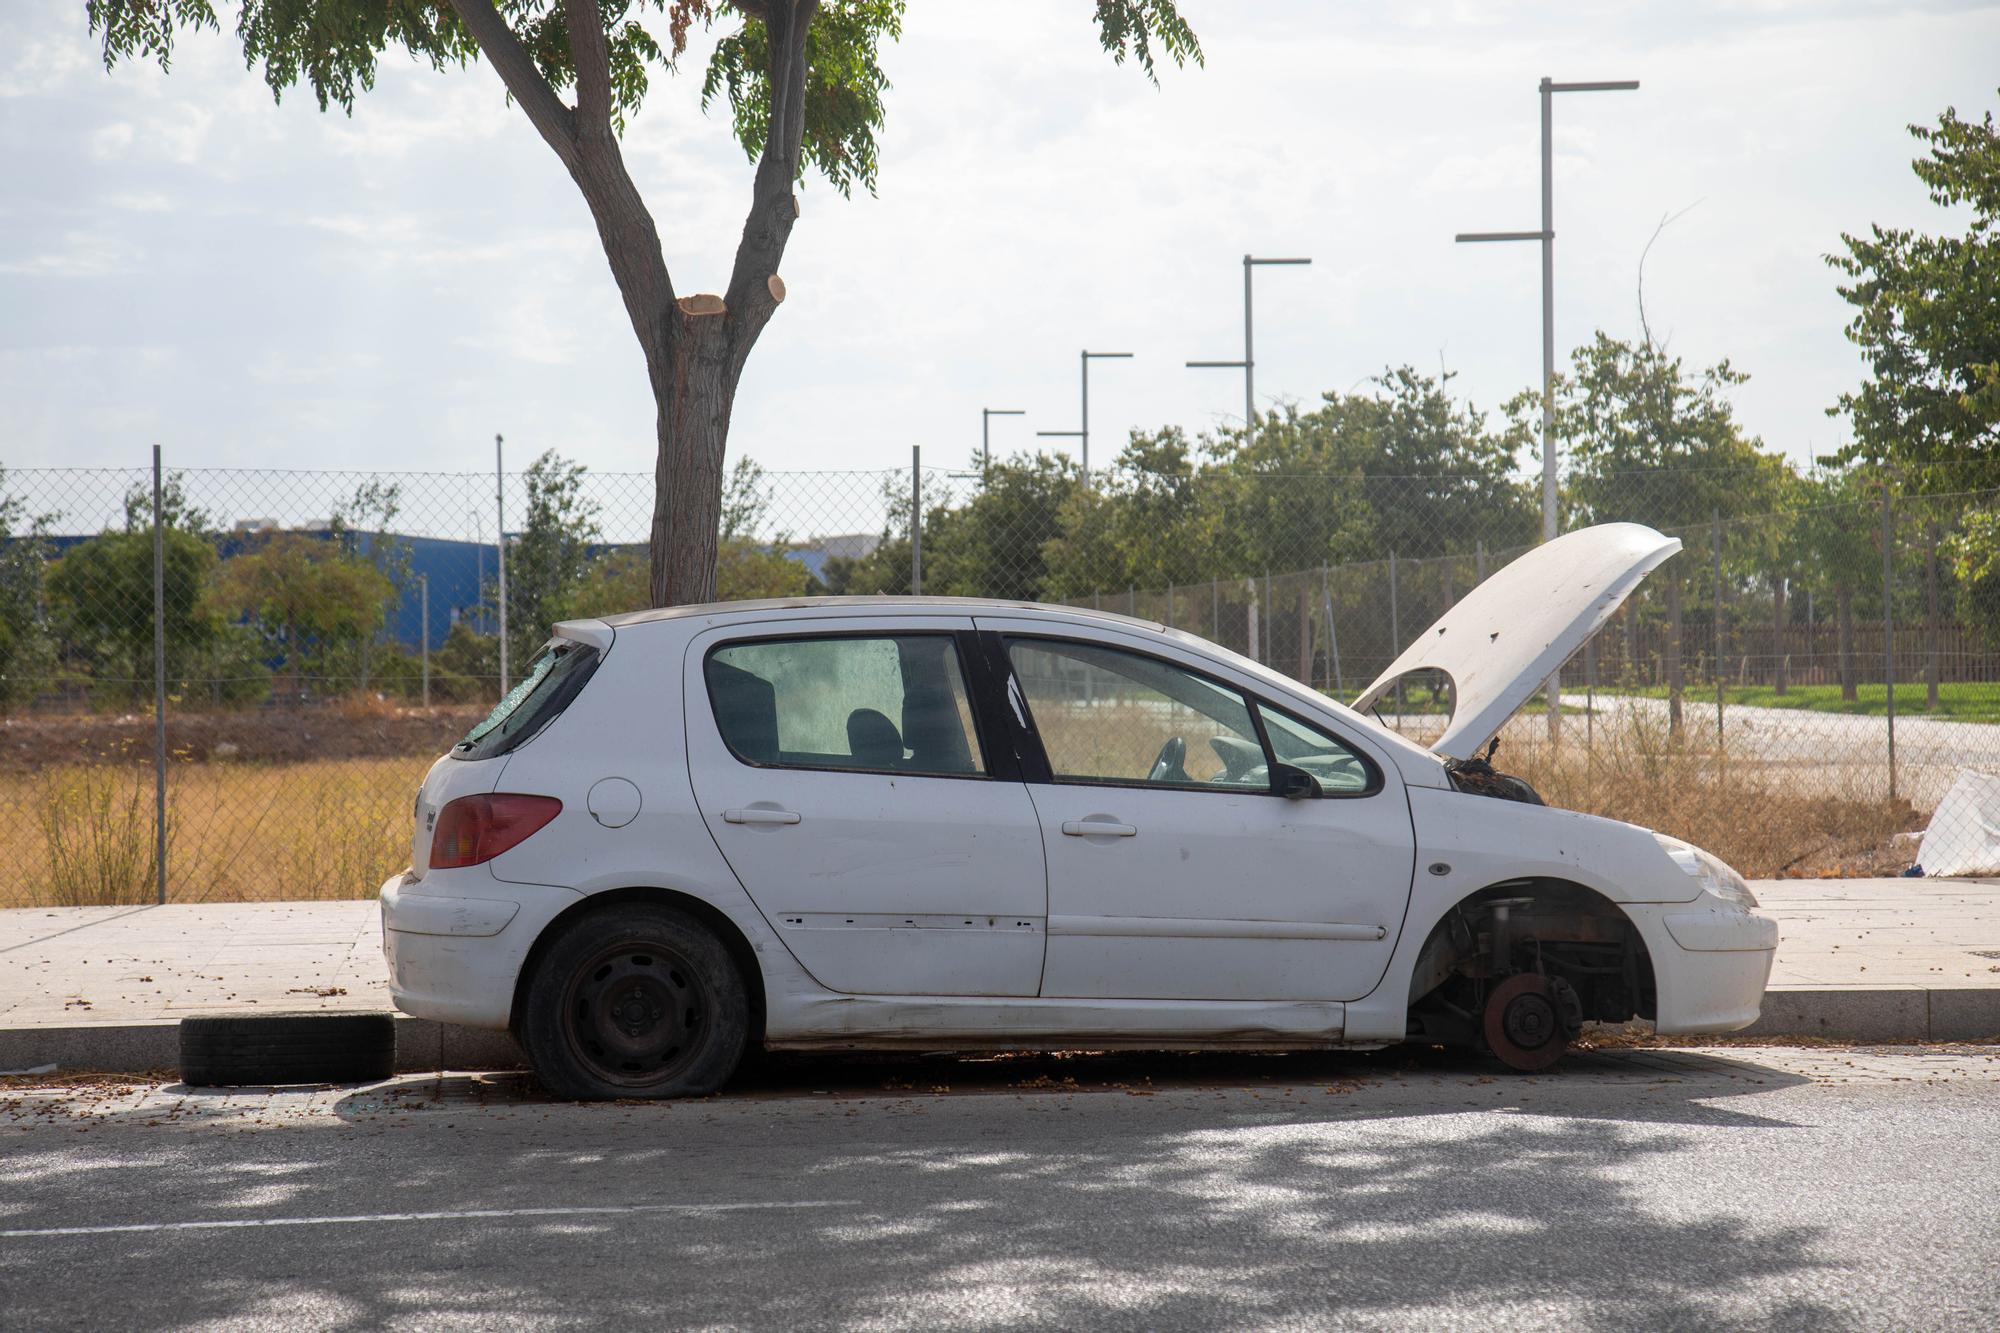 Cort duplica la sanción por el abandono de vehículos en Palma hasta los 3.000 euros